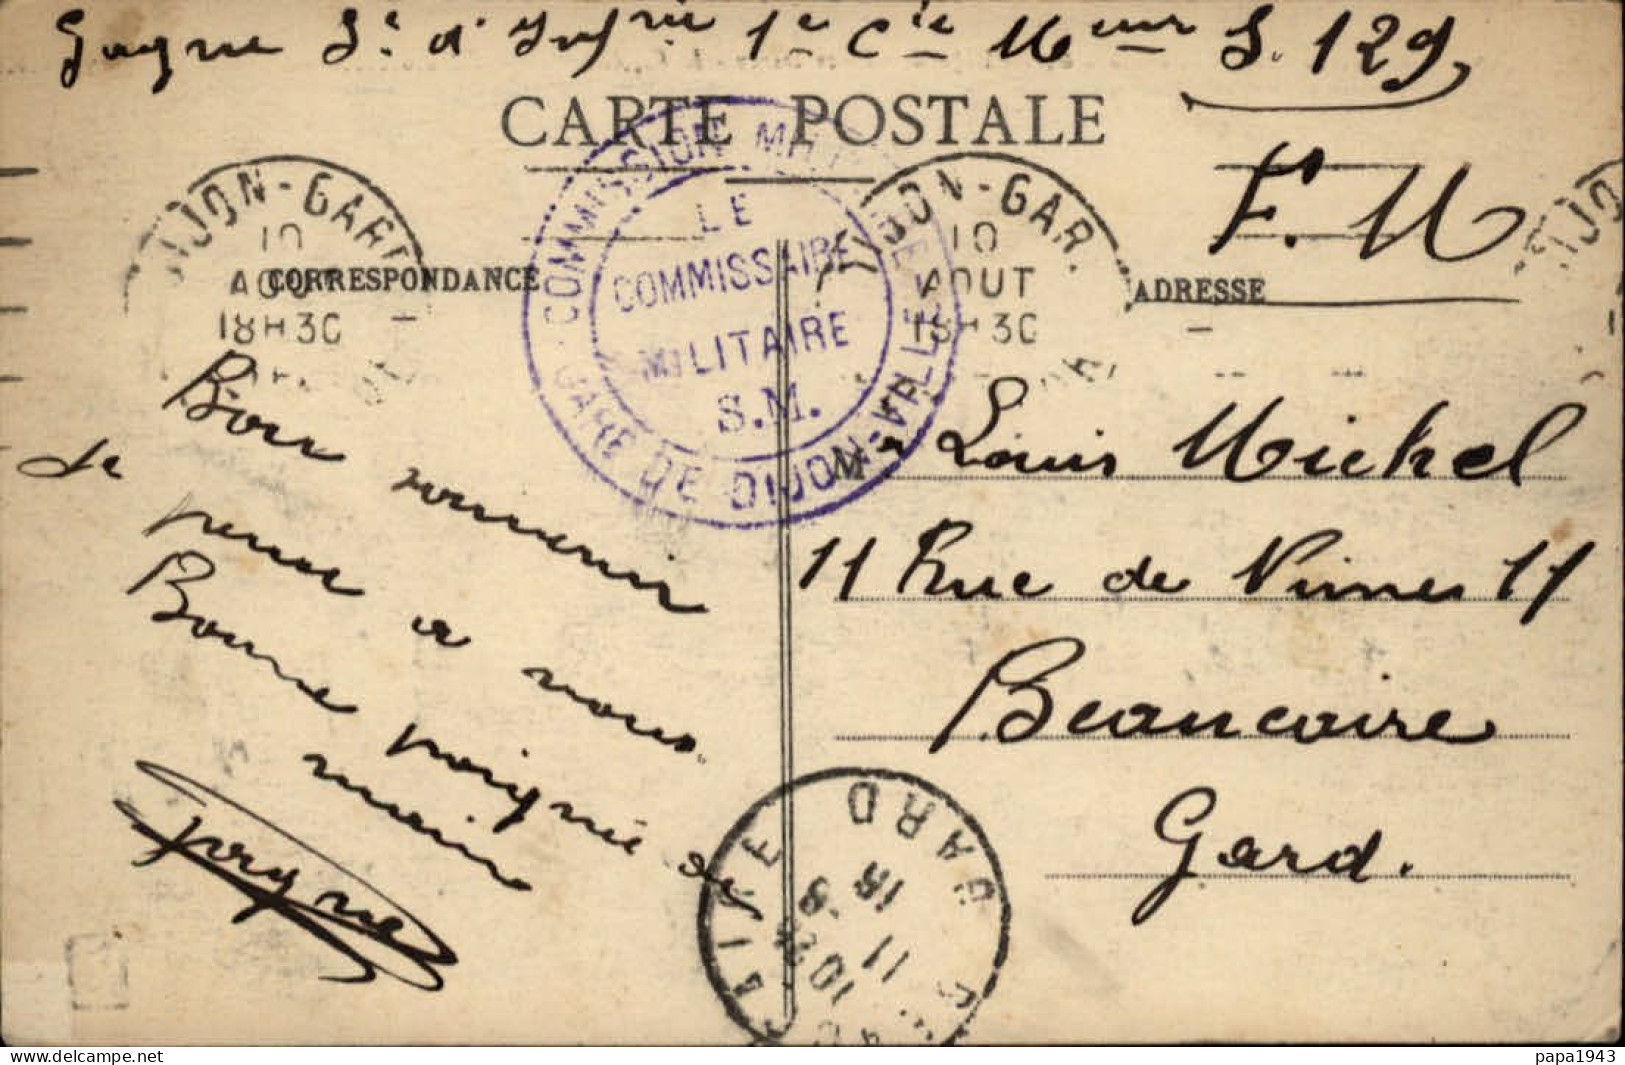 1915  C P  Cachet  "  COMMISSION MILITAIRE GARE DE DIJON - VILLE "  Envoyée à BEAUCAIRE - Brieven En Documenten